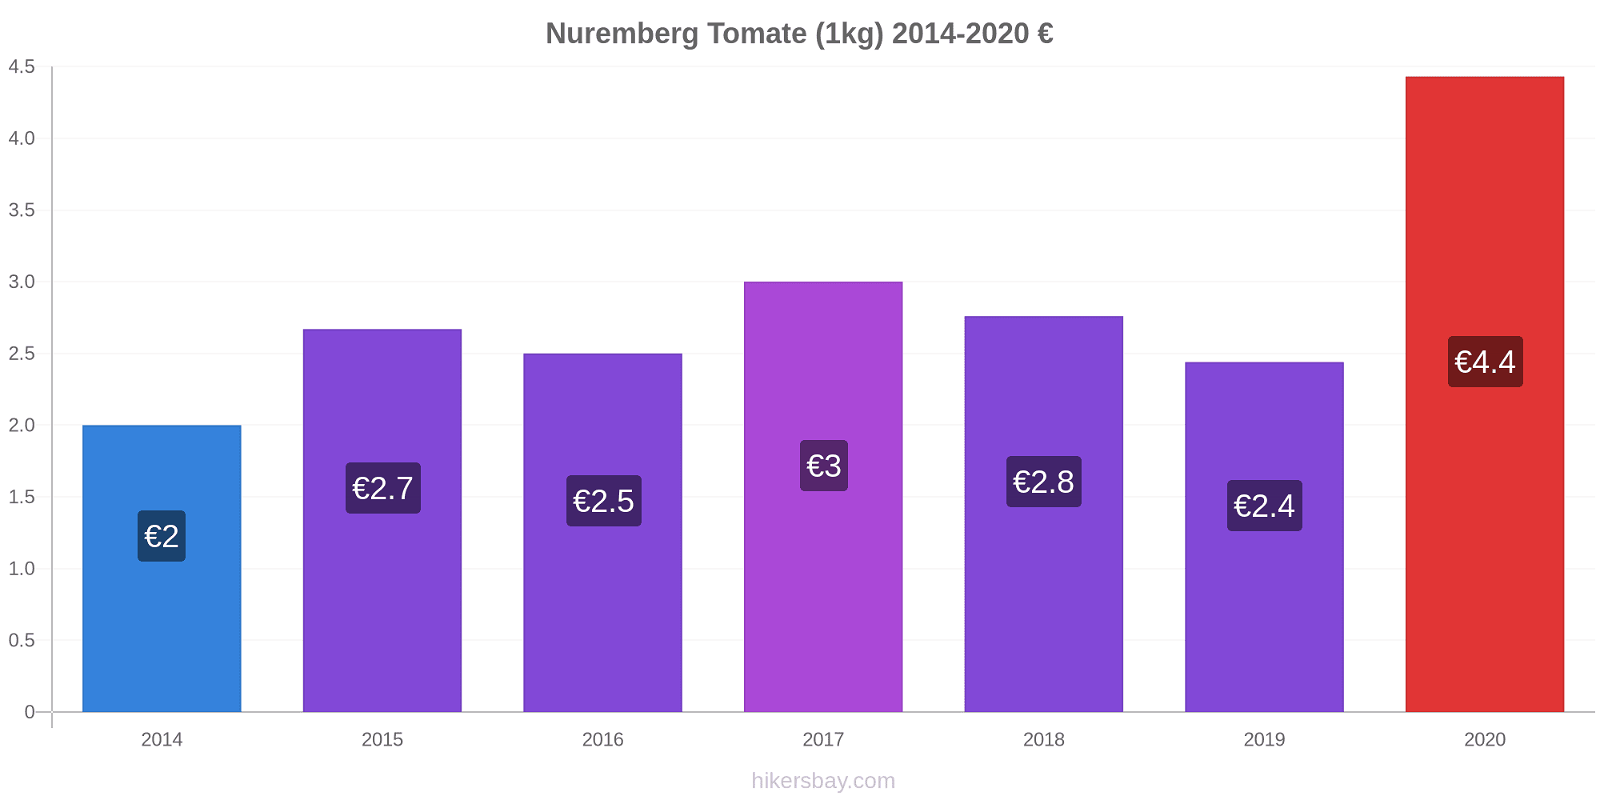 Nuremberg changements de prix Tomate (1kg) hikersbay.com